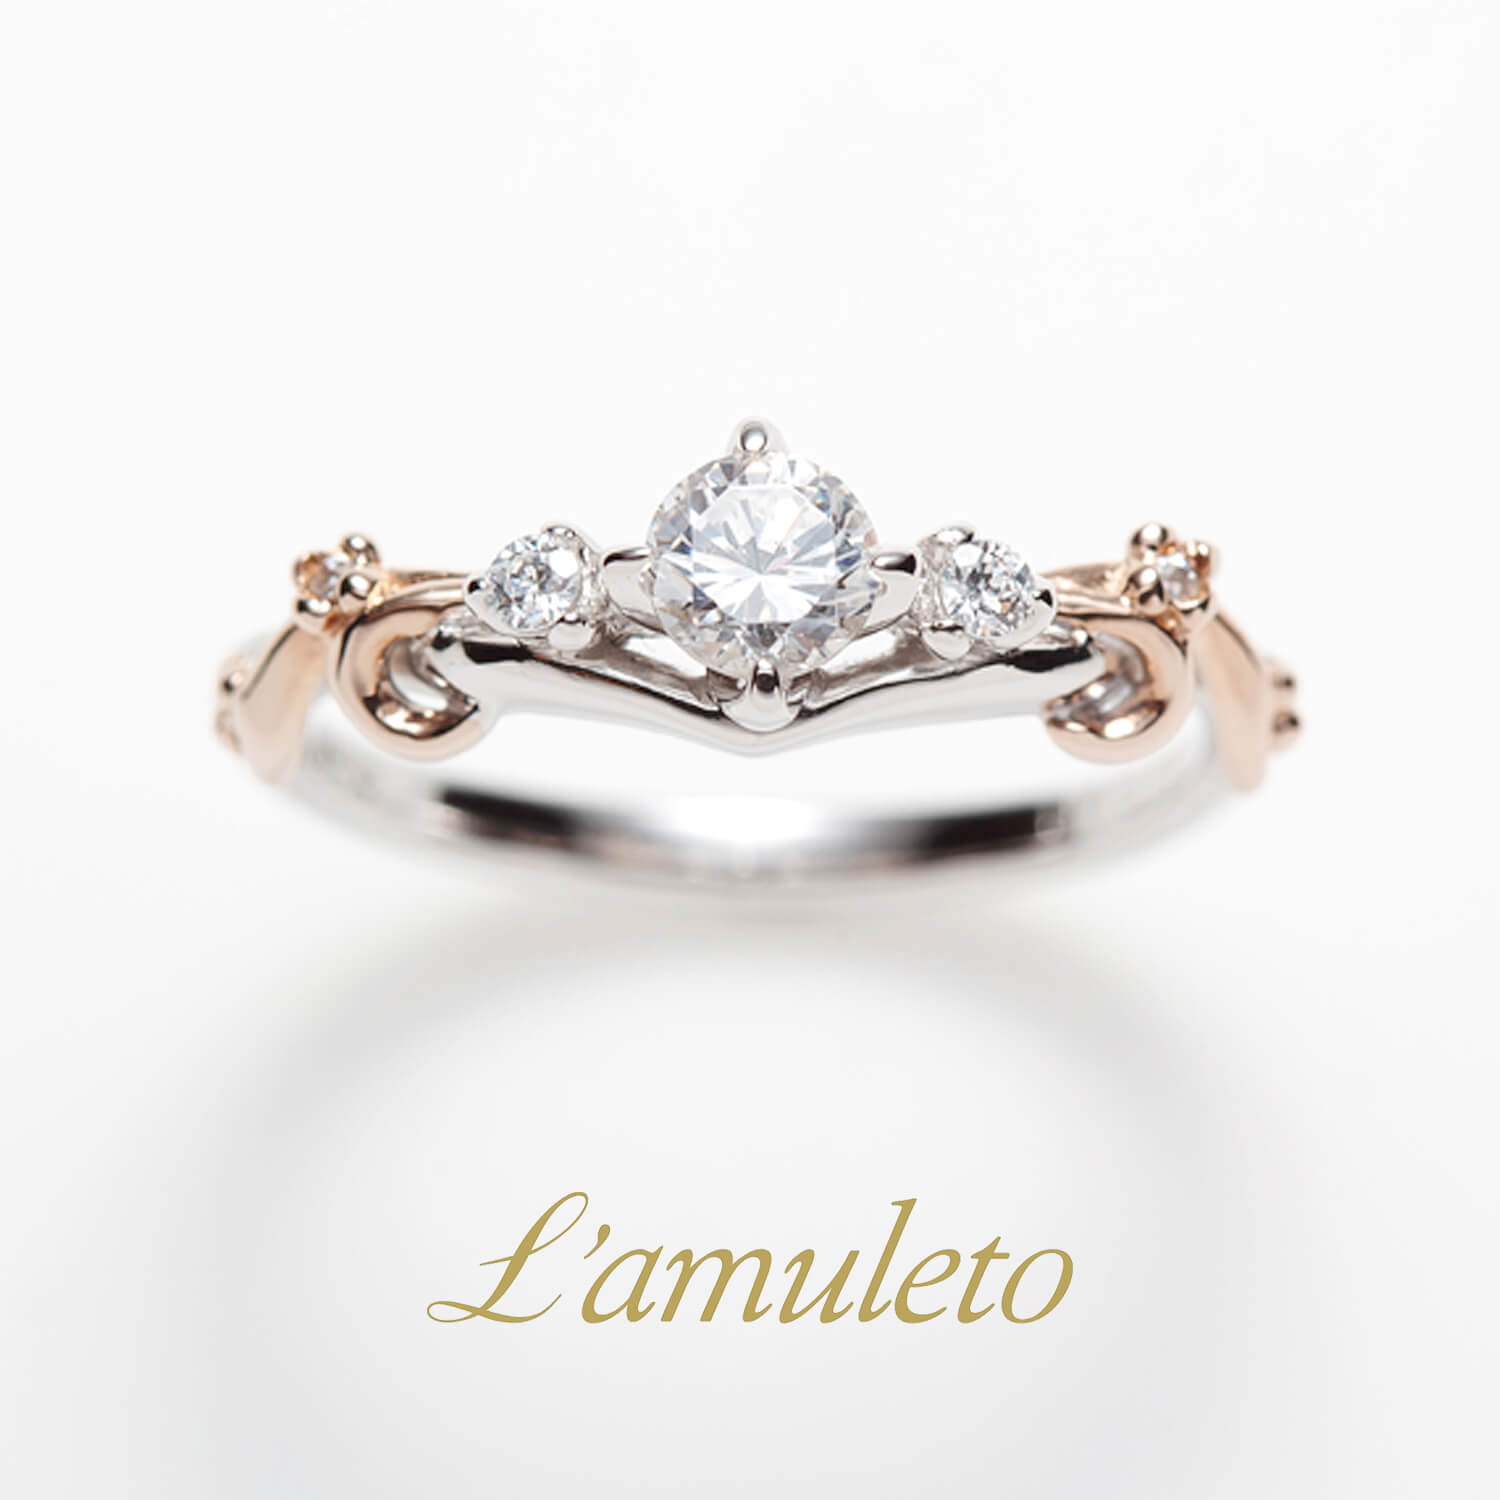 L'amuletoラムレートの婚約指輪Affettoアフェット